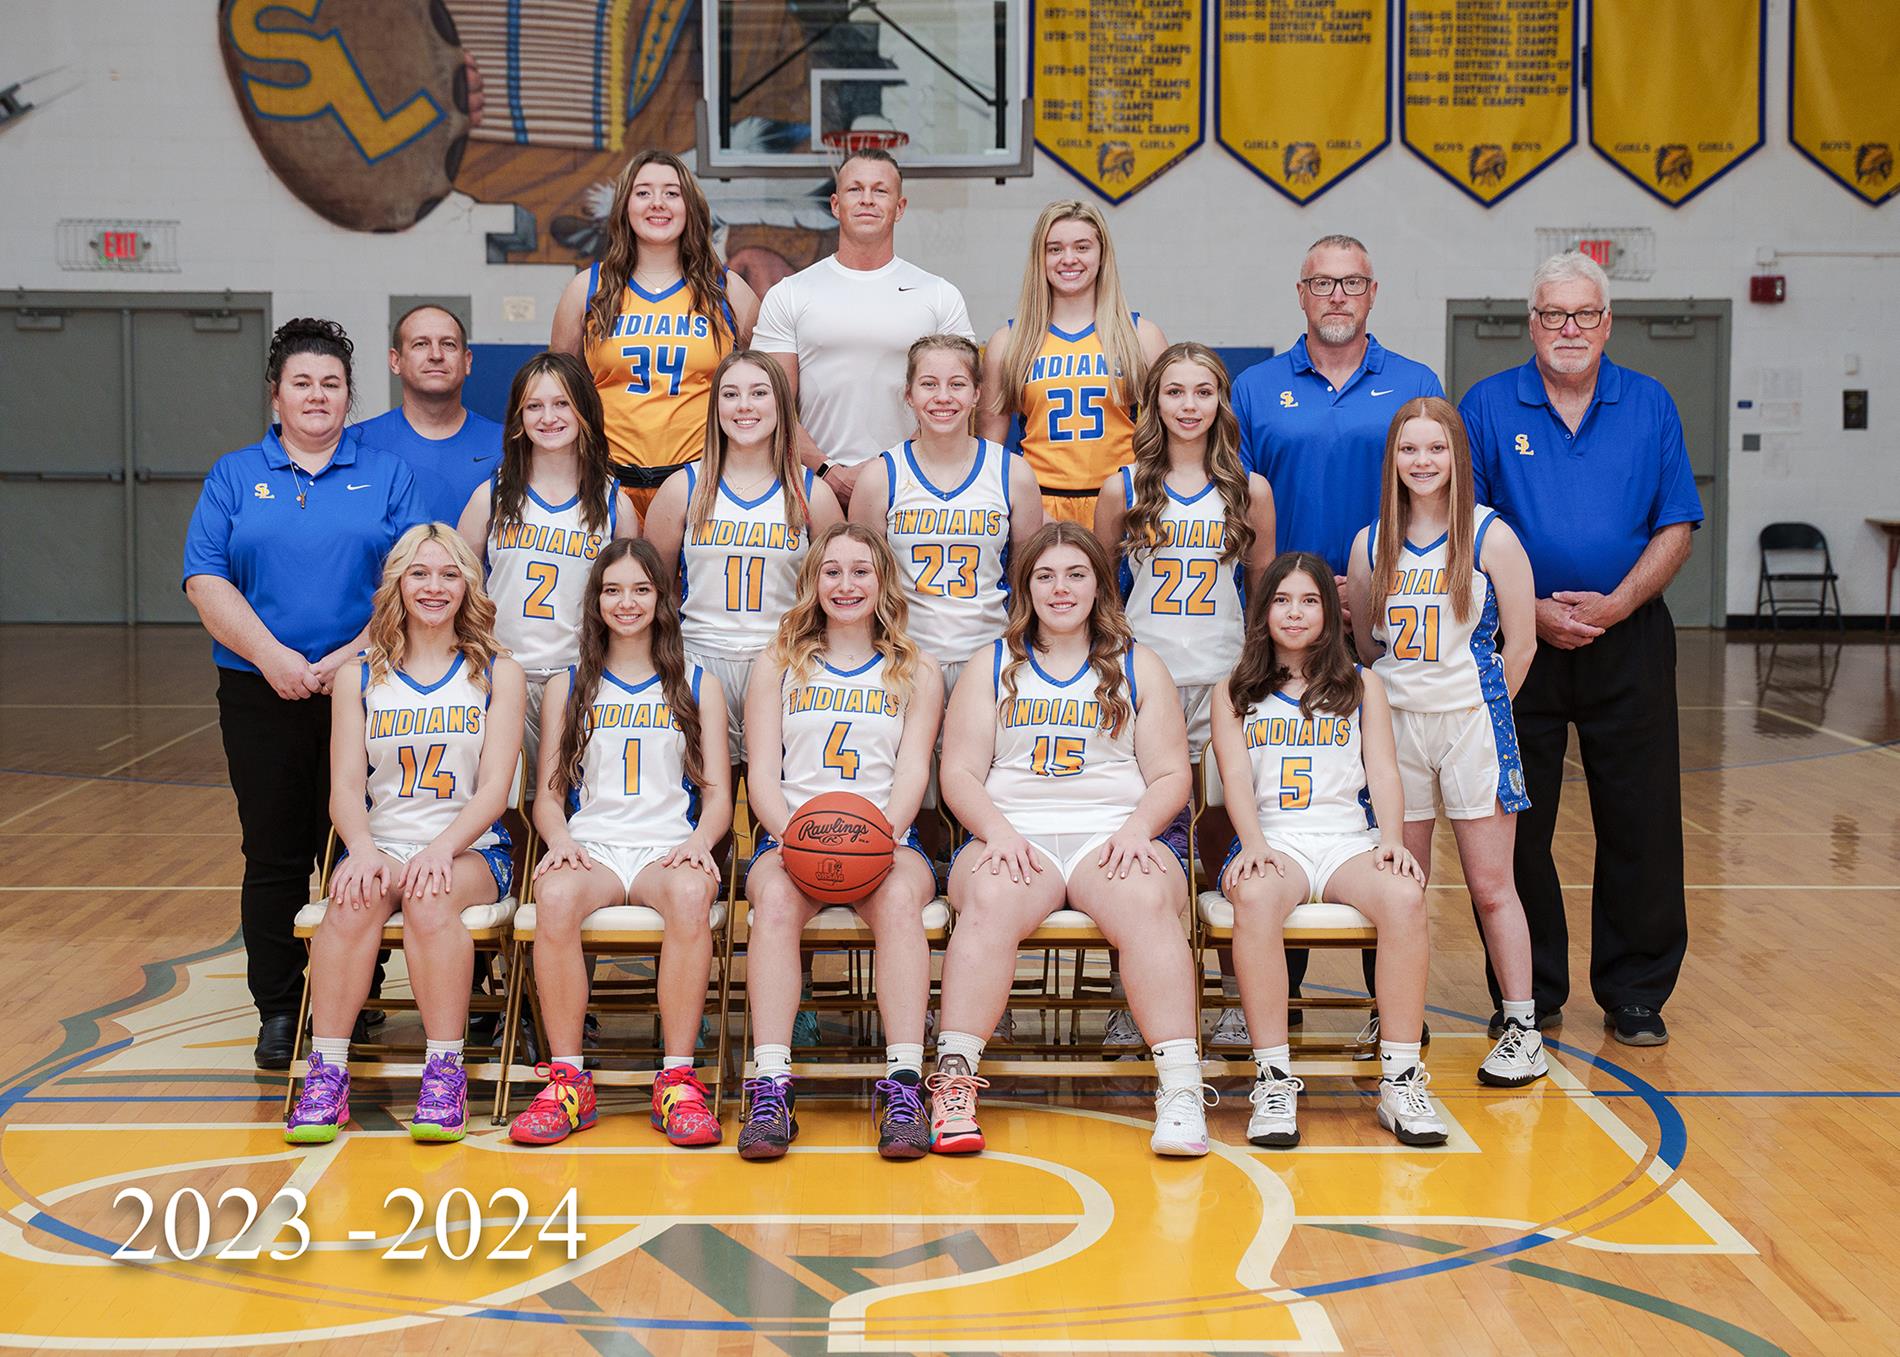 2023-2024 Girls Basketball teams